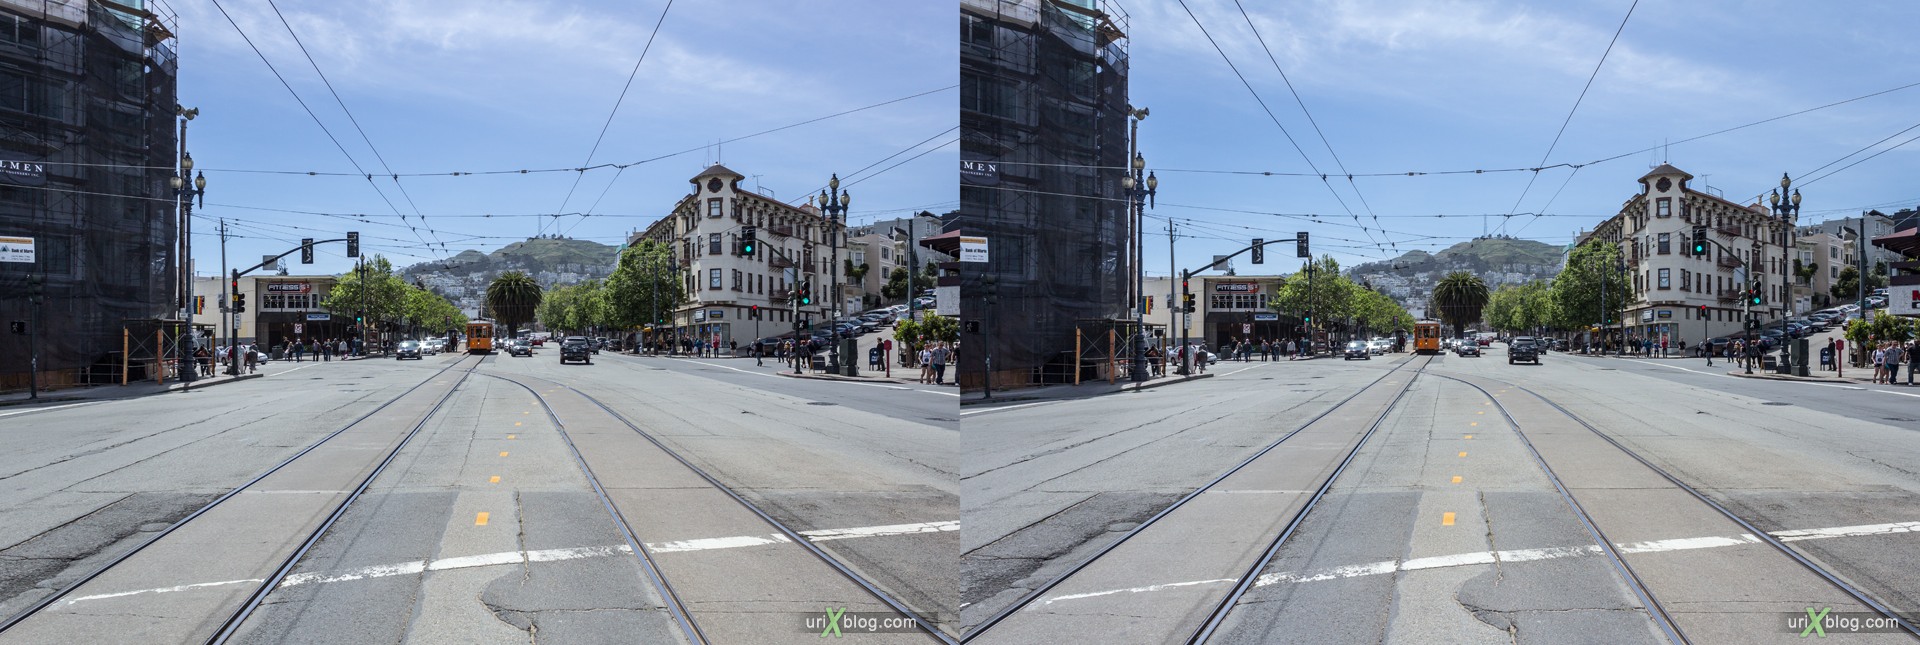 2013, Castro, Сан-Франциско, США, 3D, перекрёстные стереопары, стерео, стереопара, стереопары